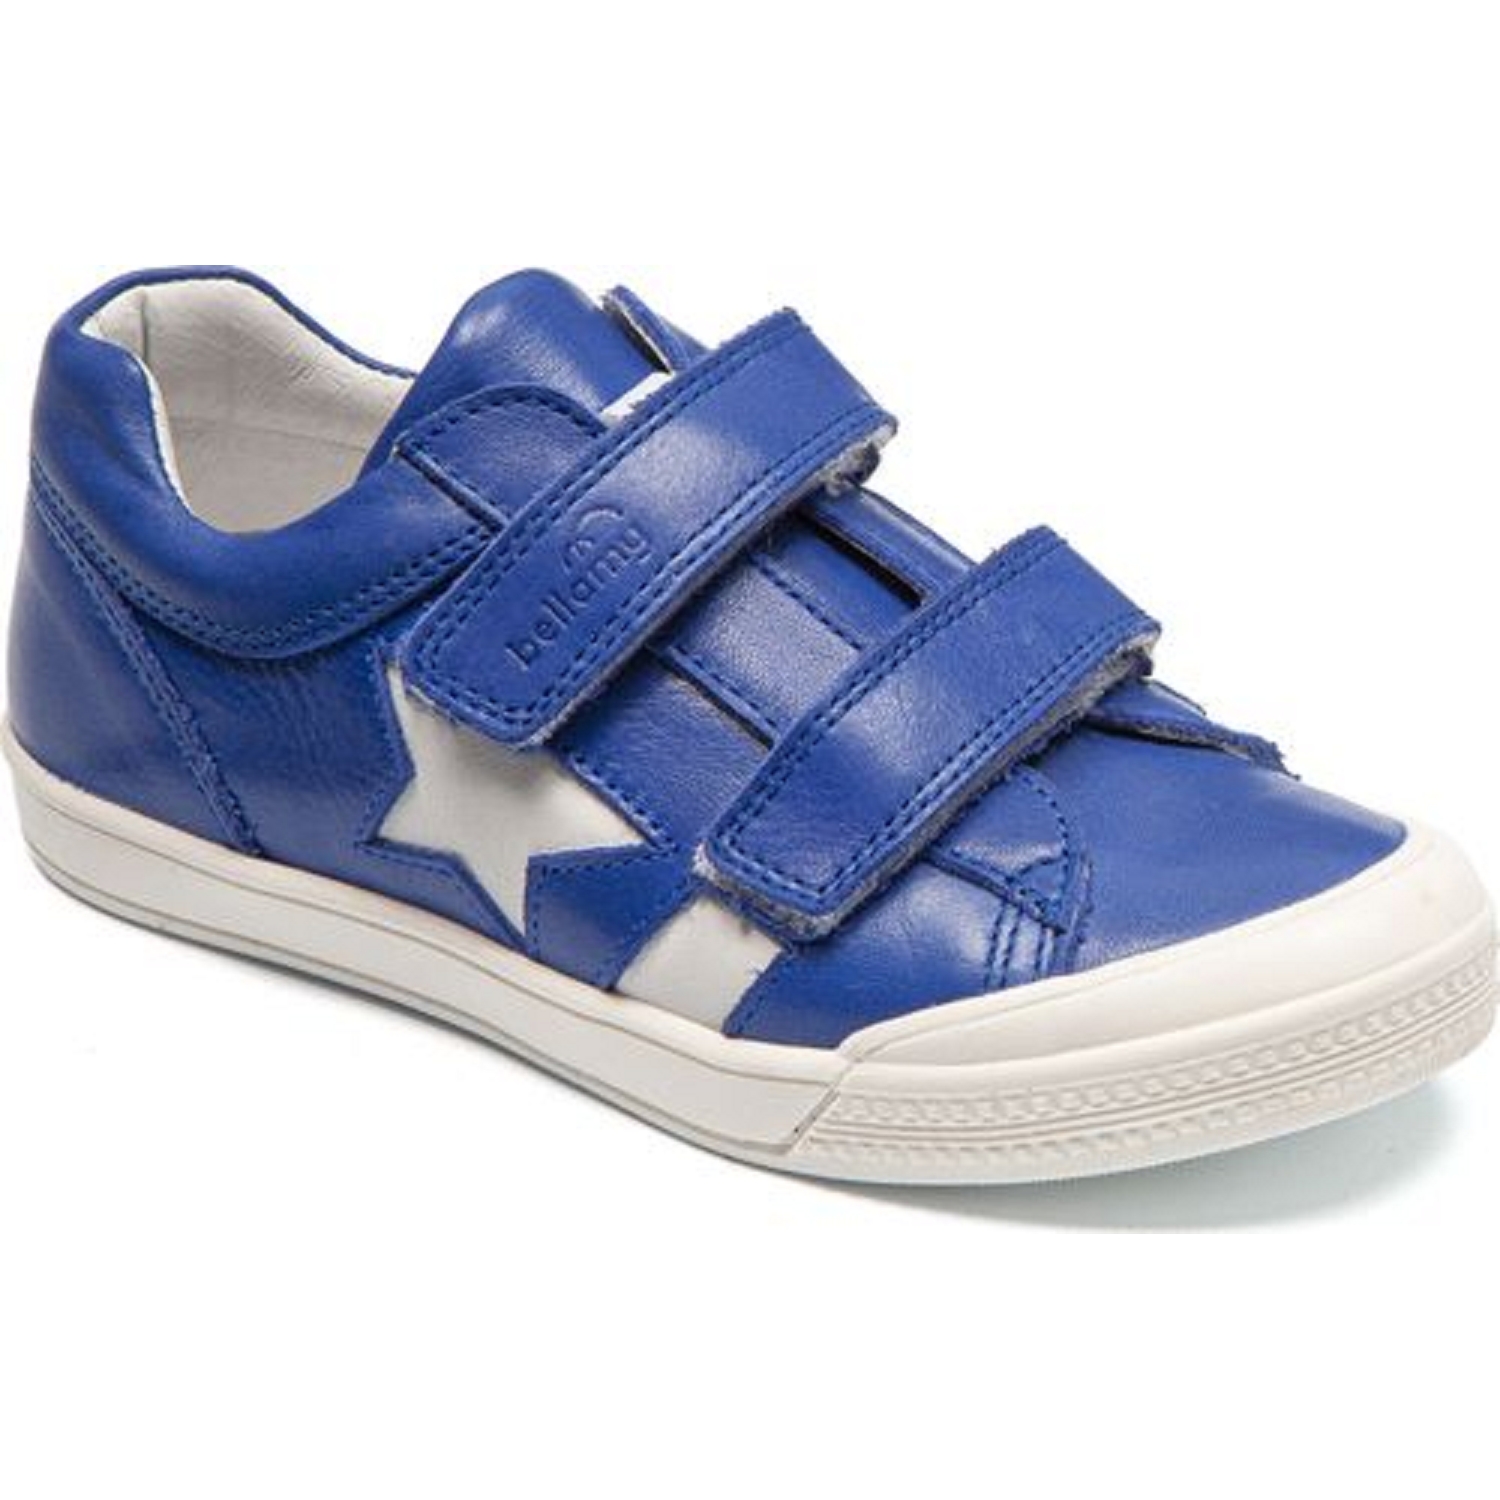 Chaussures Bellamy, chaussures à lactes bébé garçon en cuir bleu